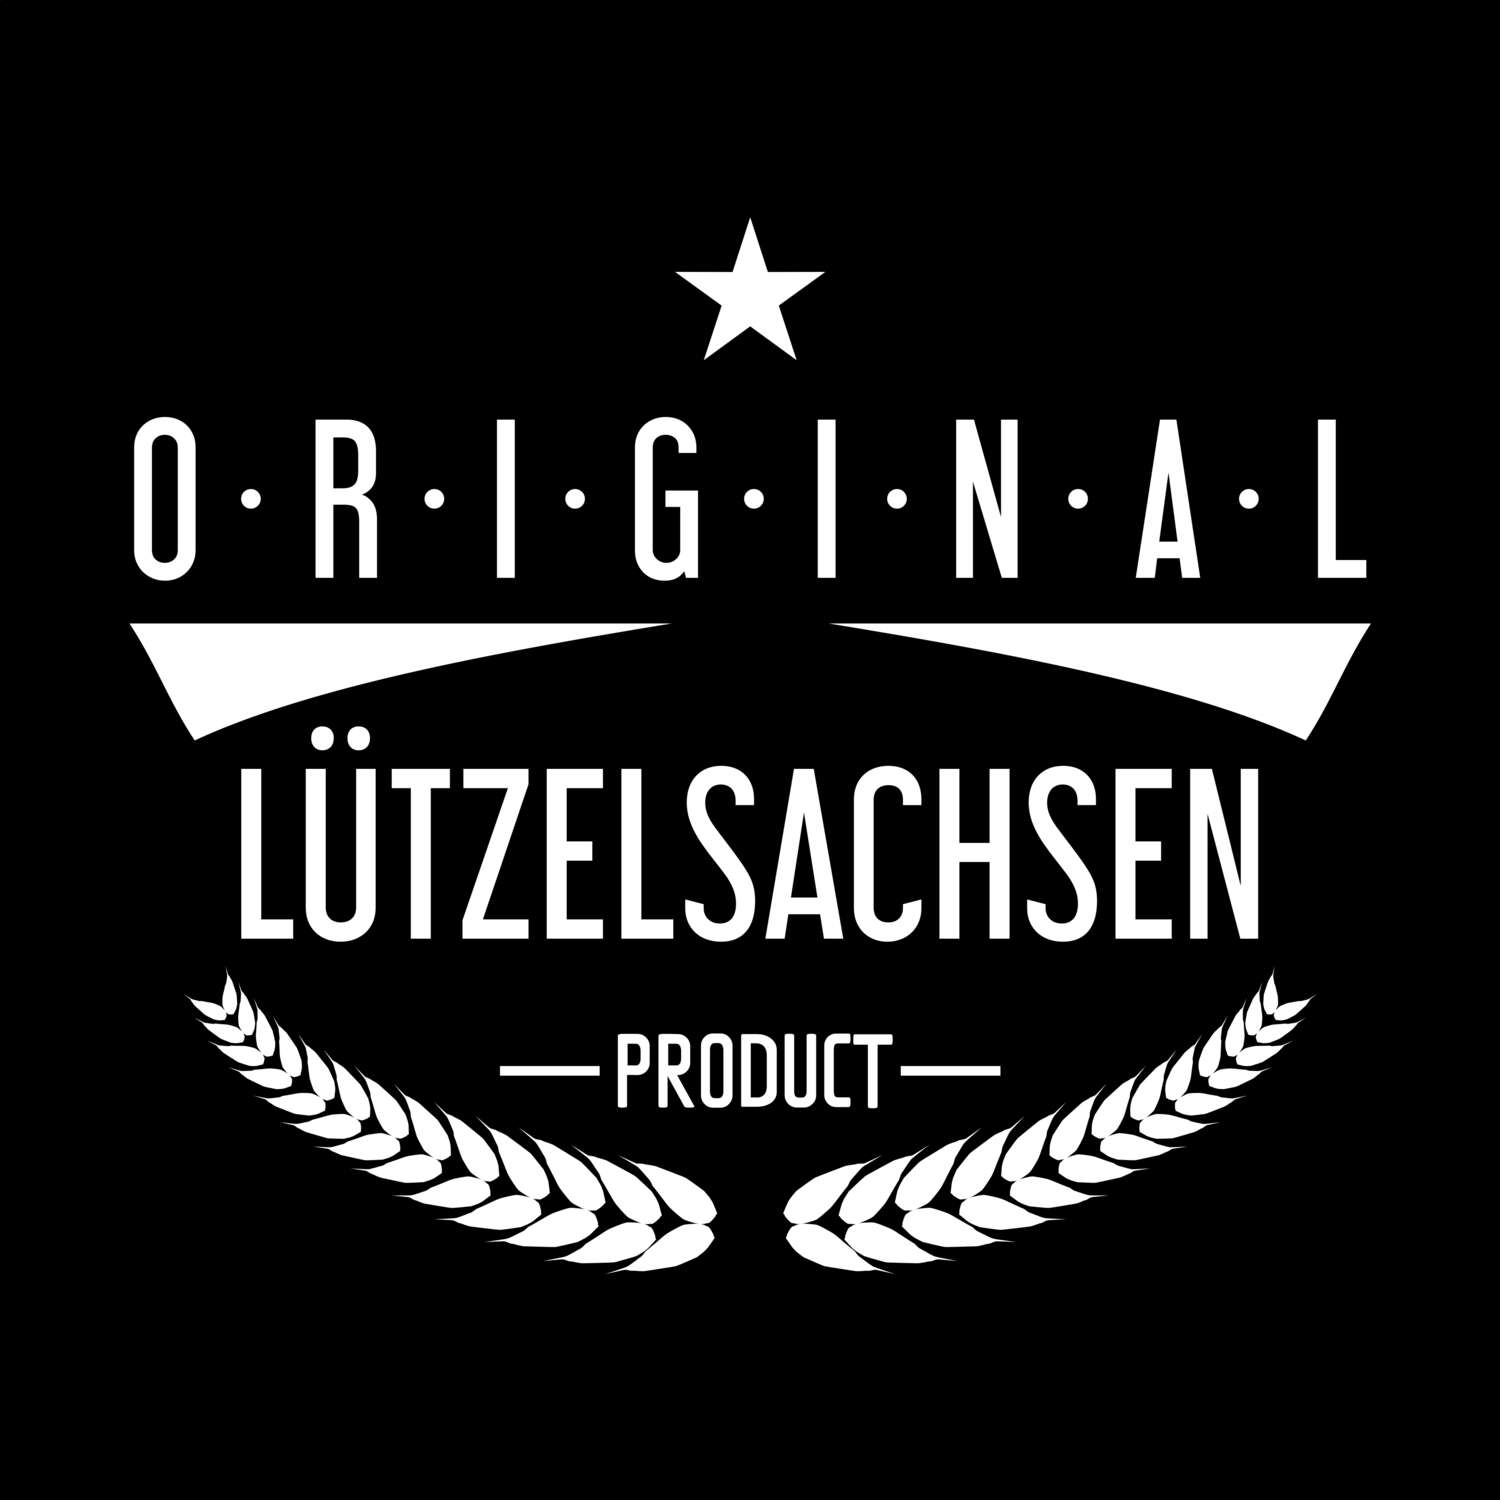 Lützelsachsen T-Shirt »Original Product«